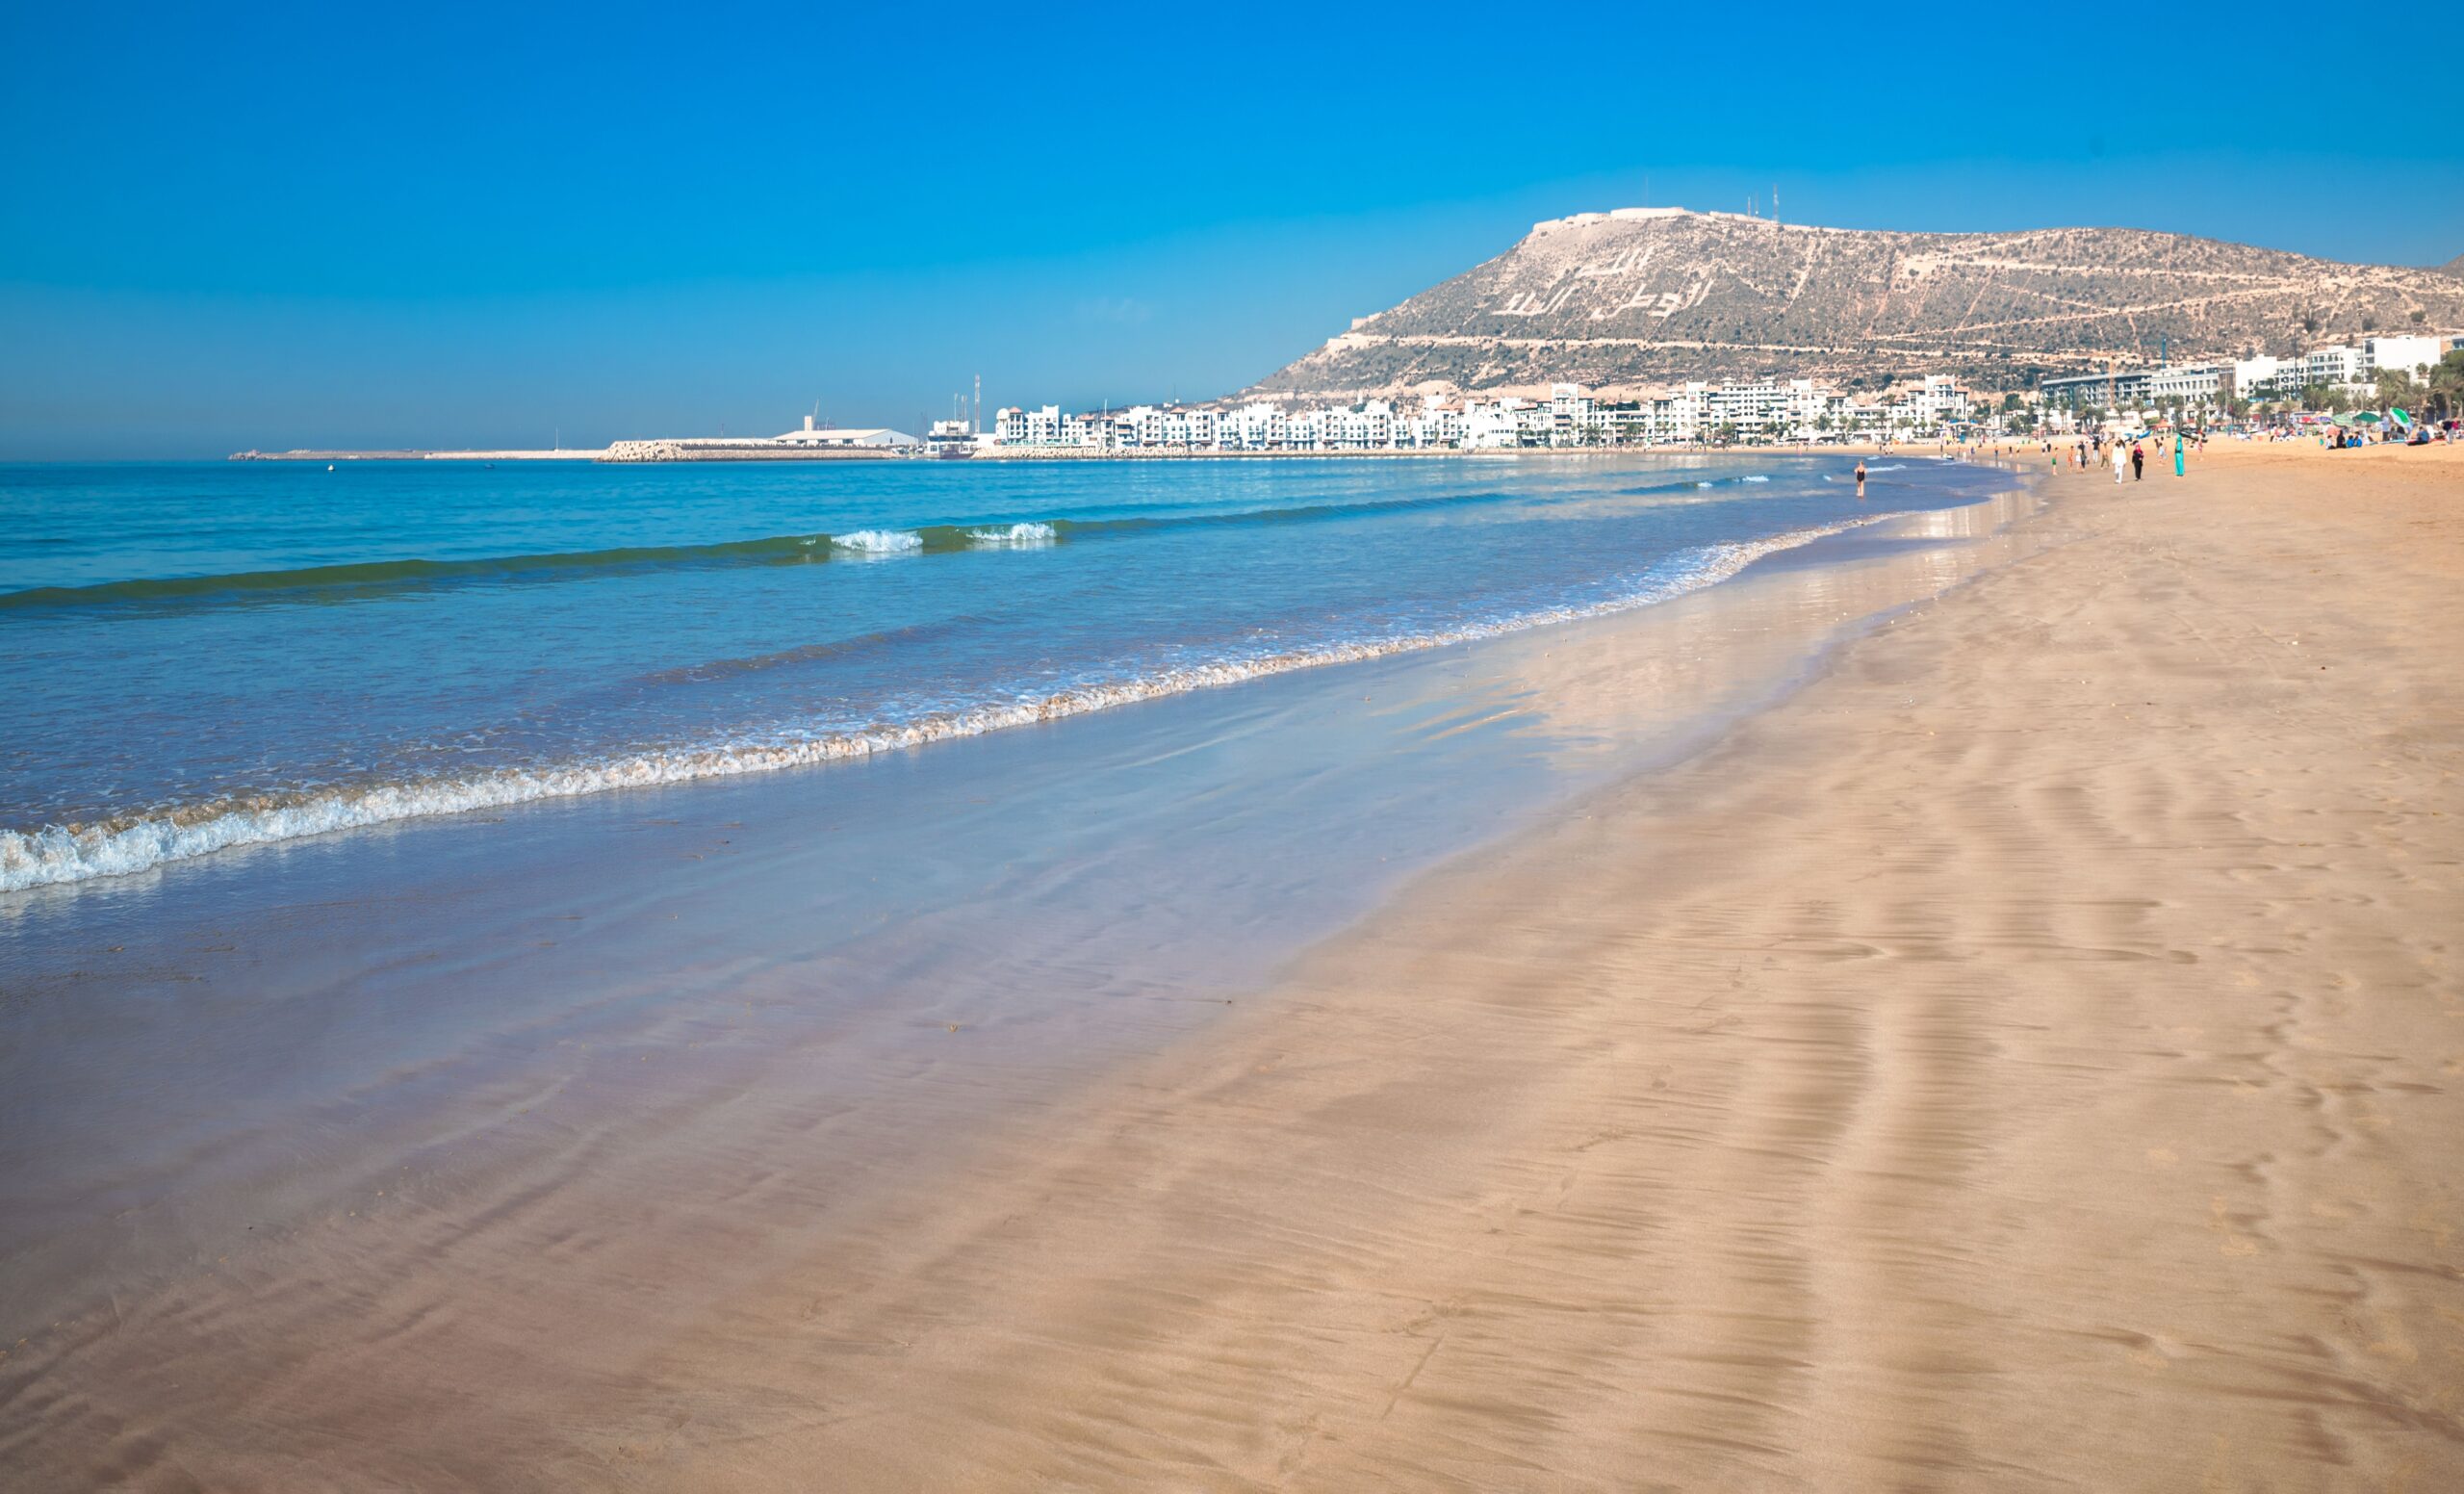 Marakeš in počitnice v Agadirju